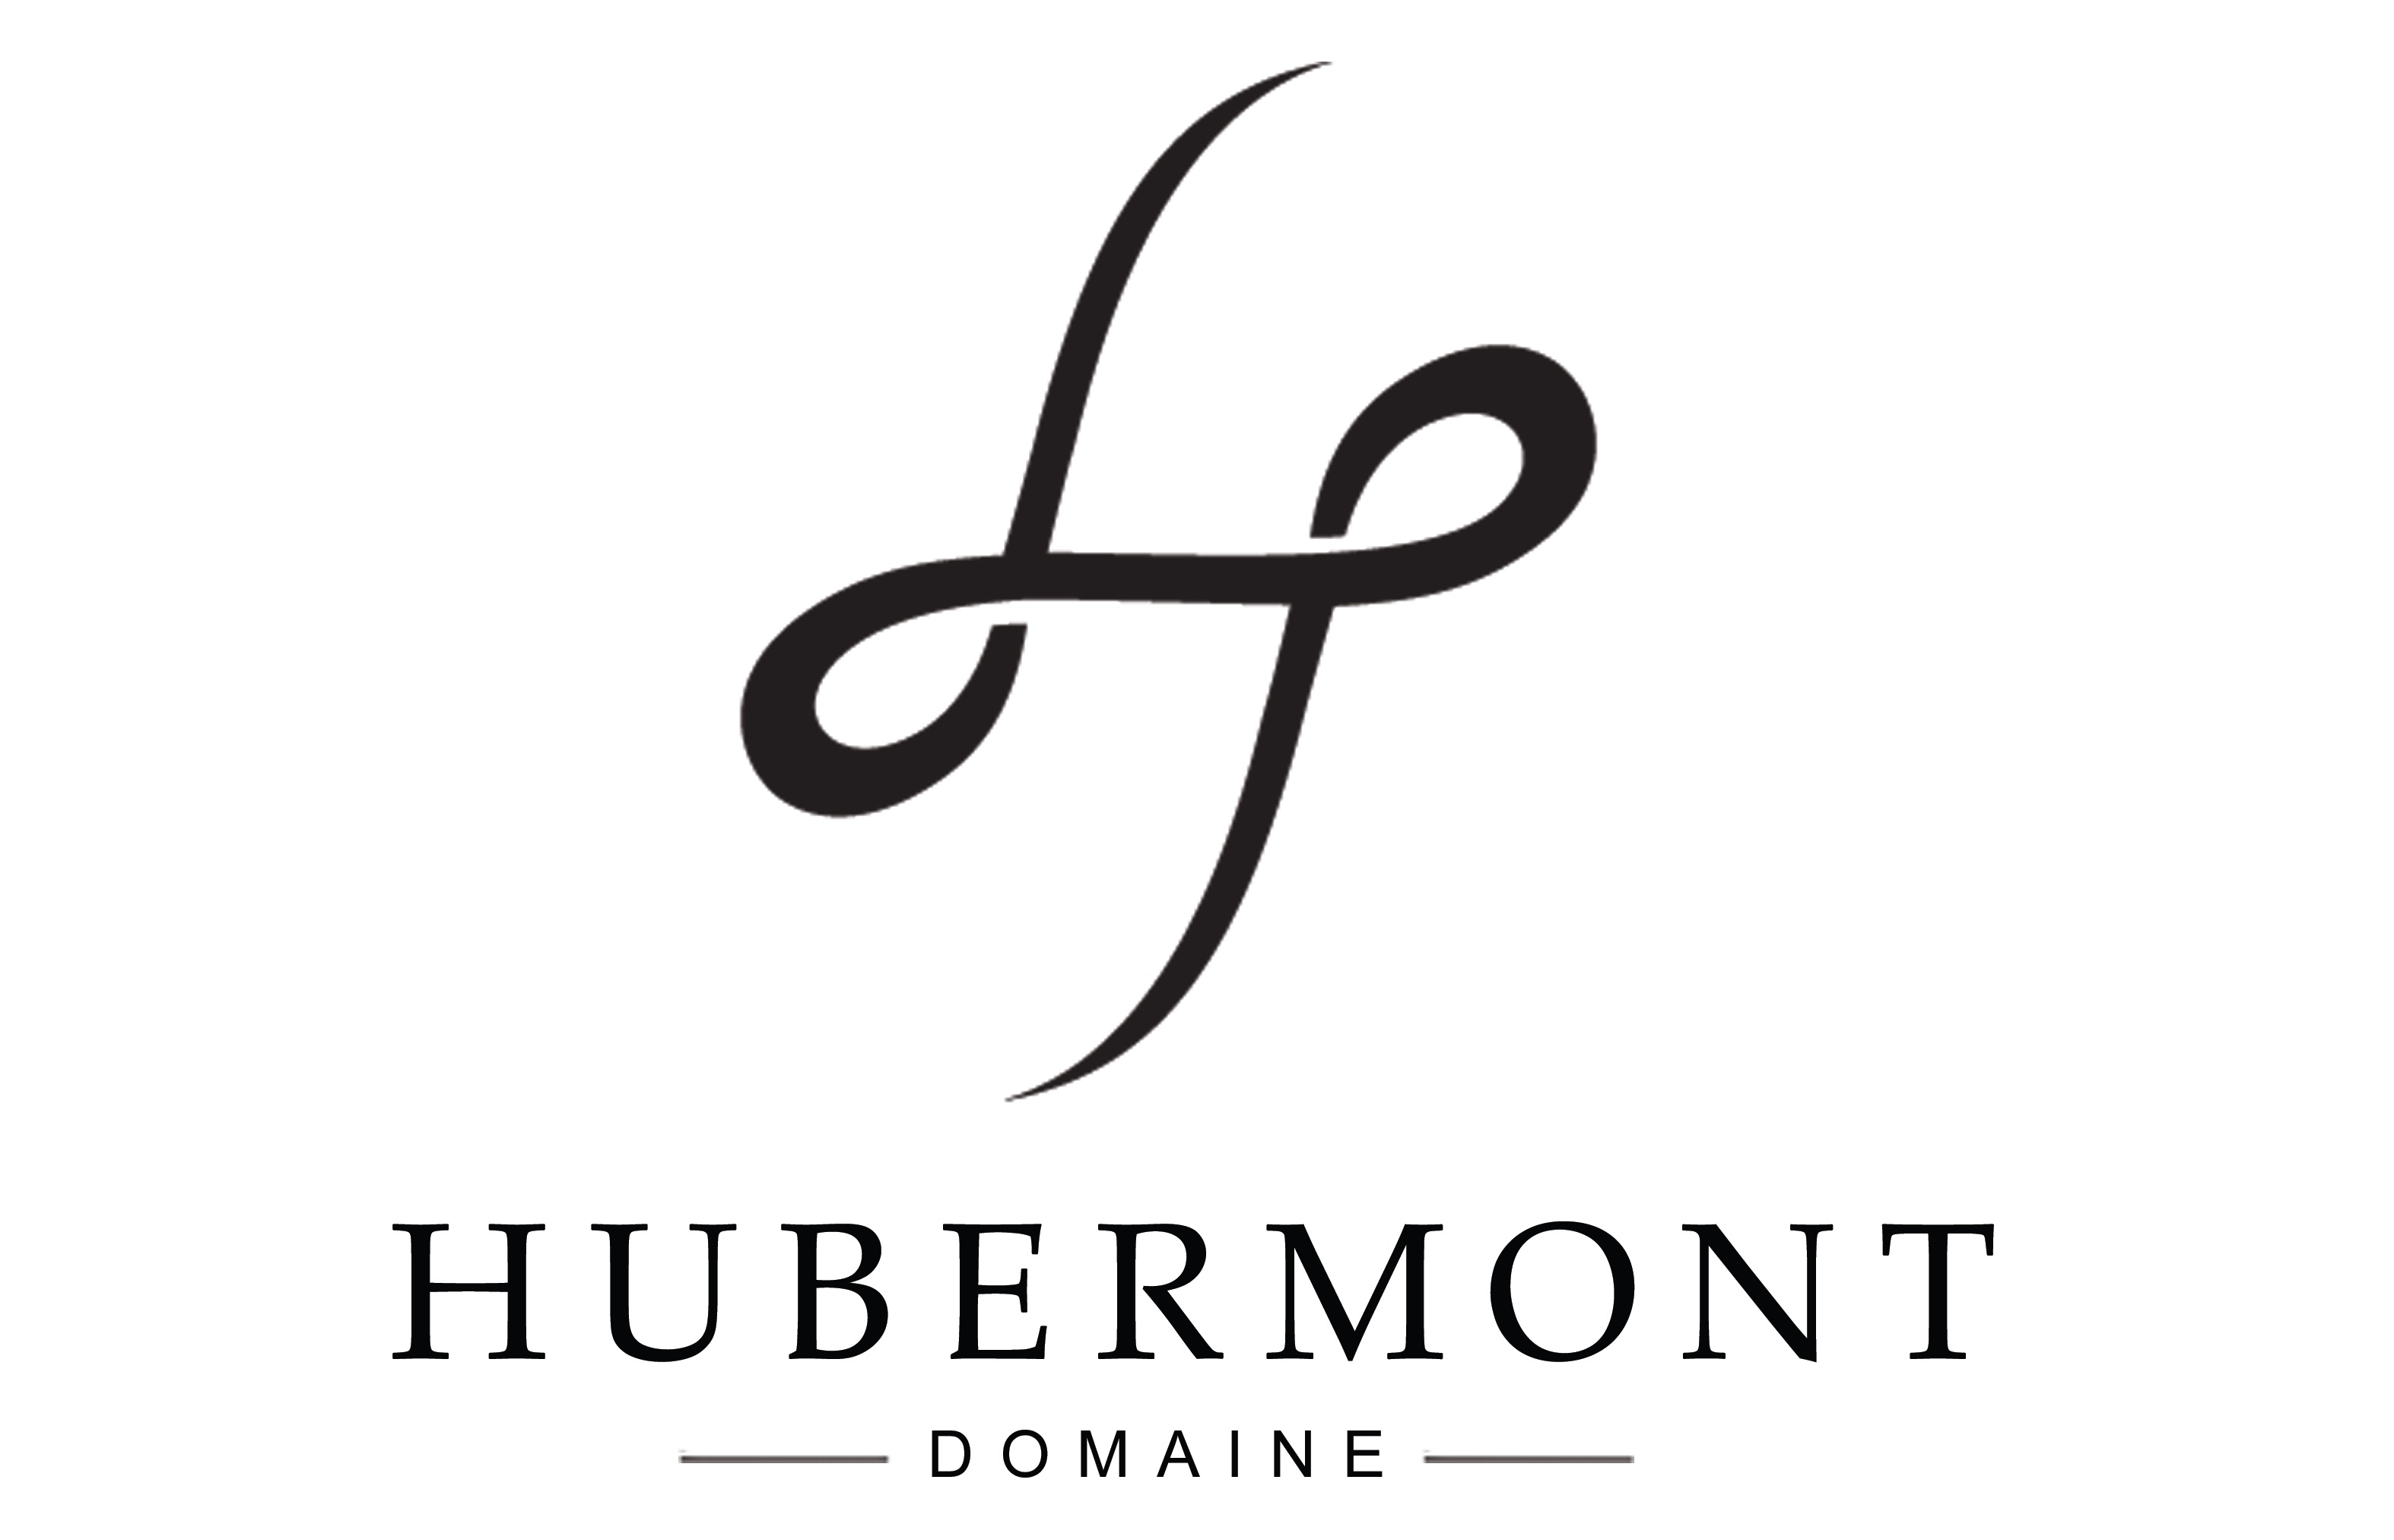 Domaine Hubermont